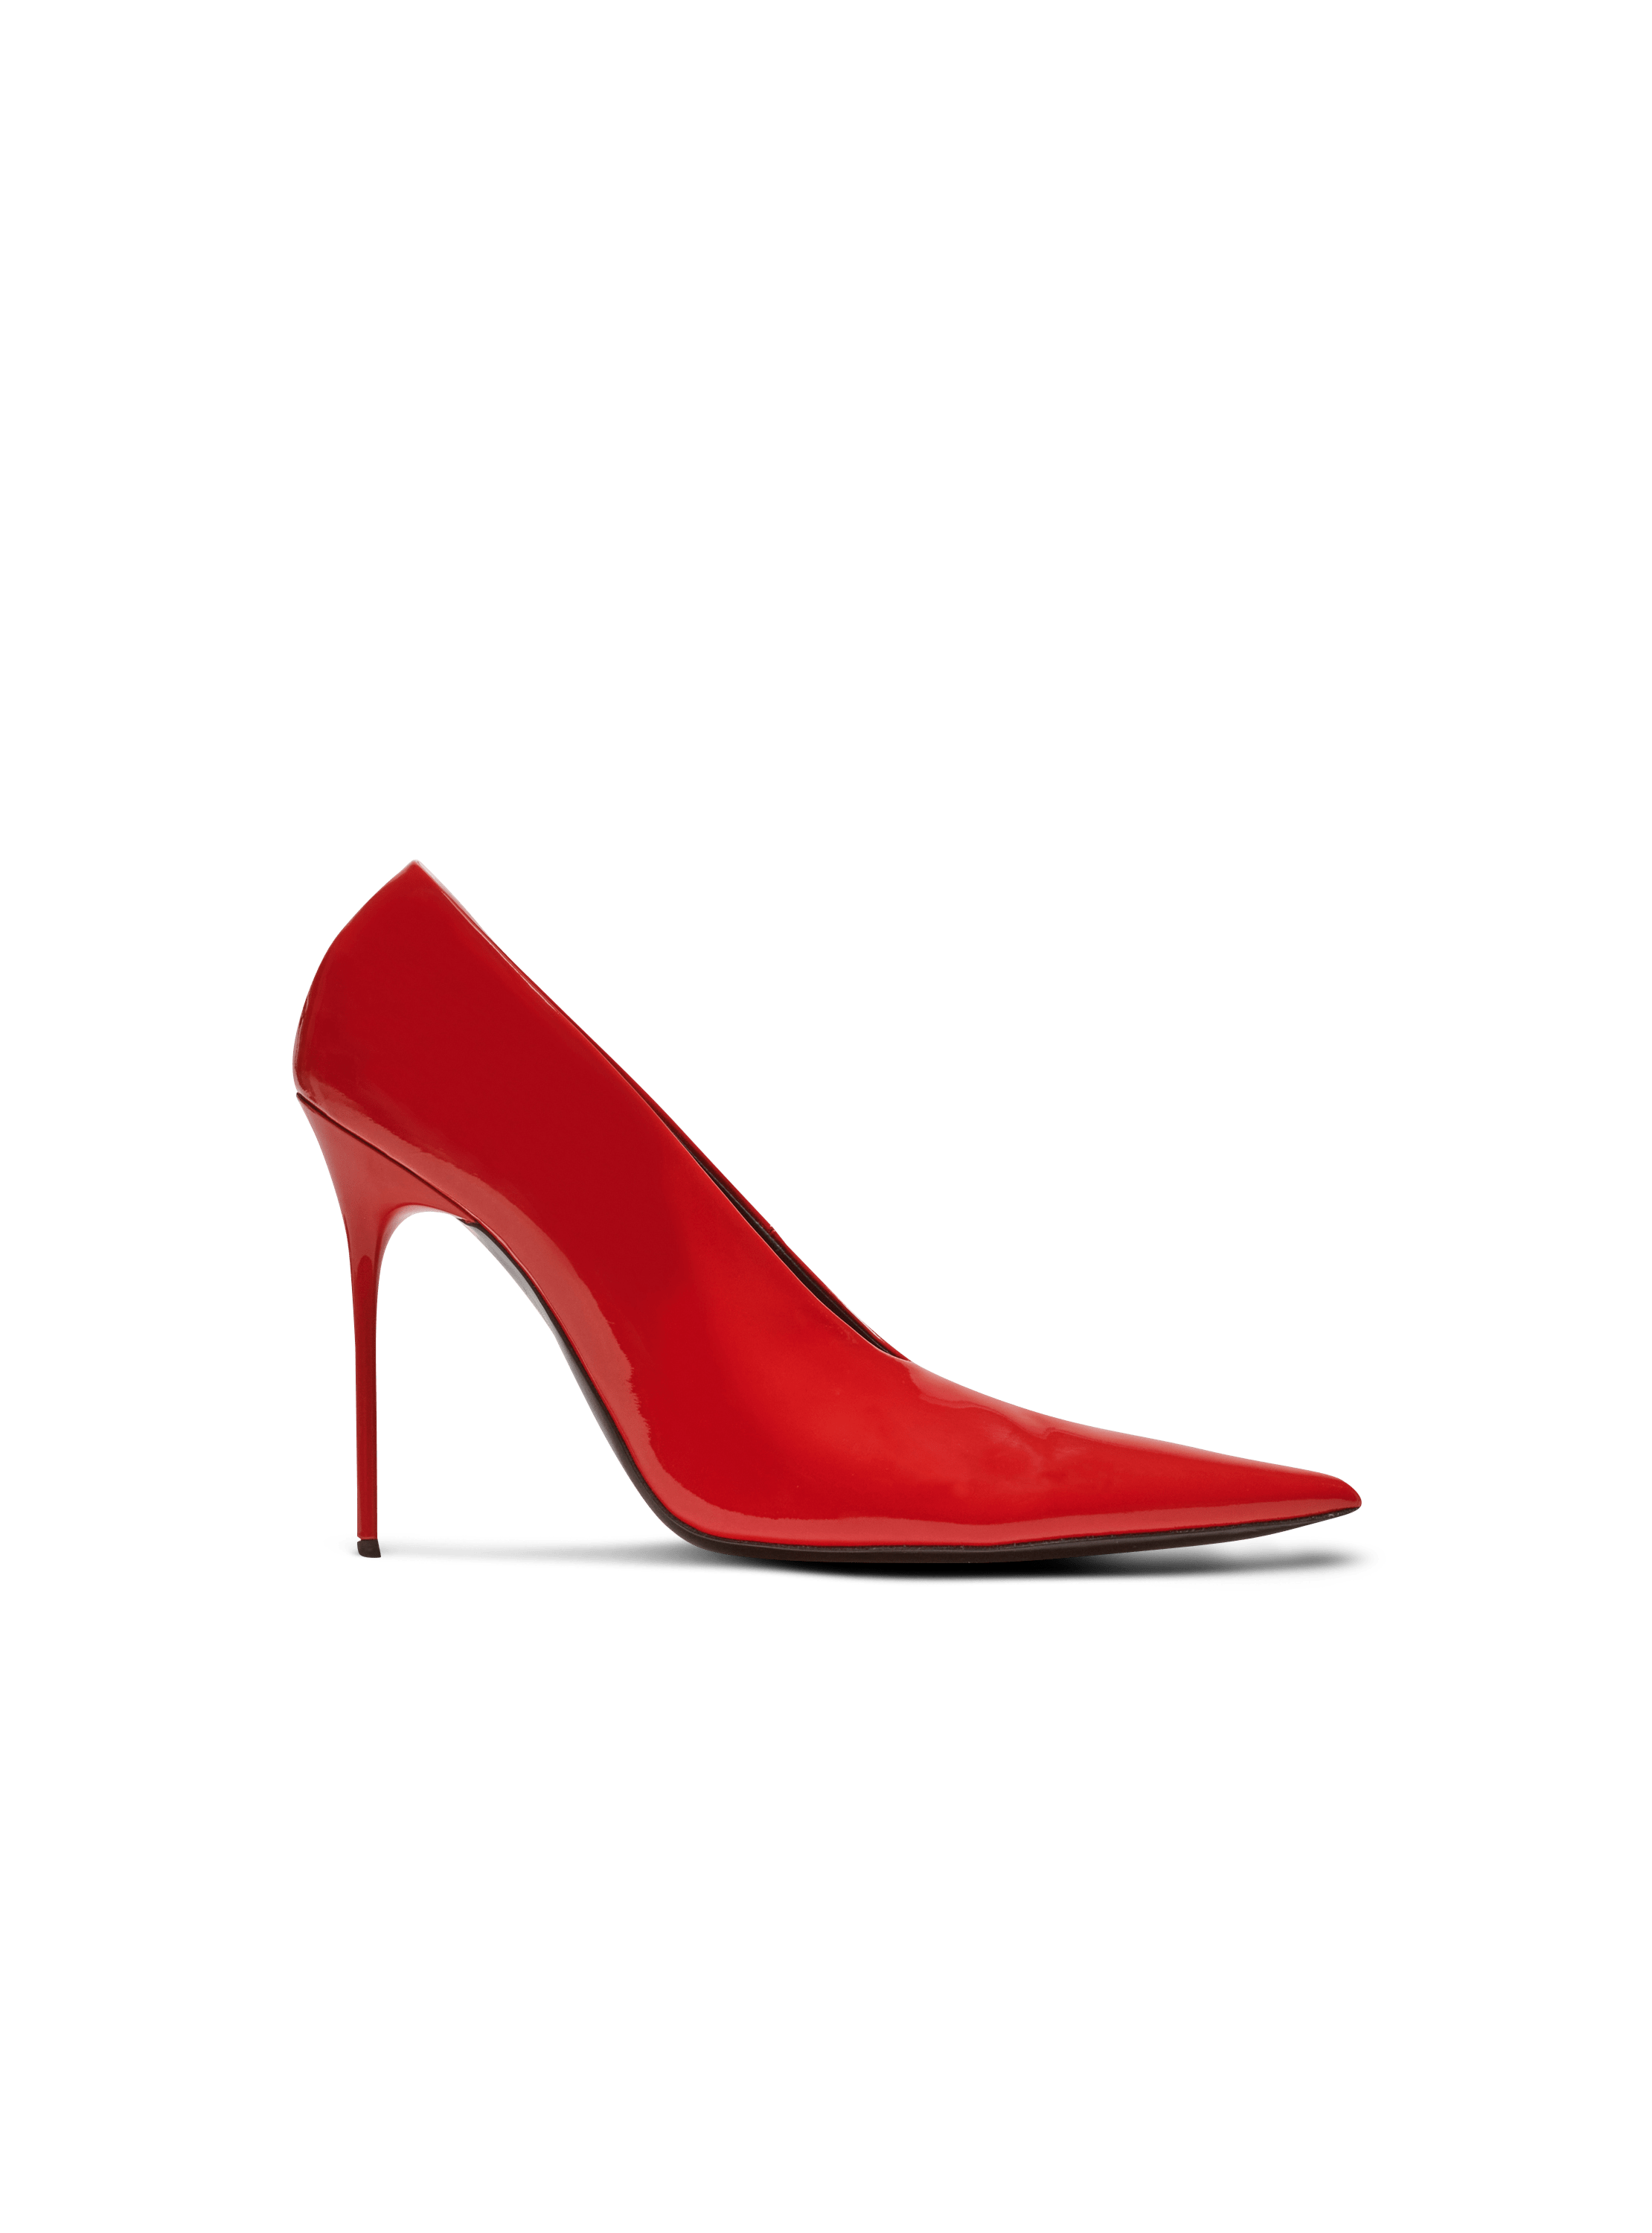 Clara patent leather pumps, rojo, hi-res